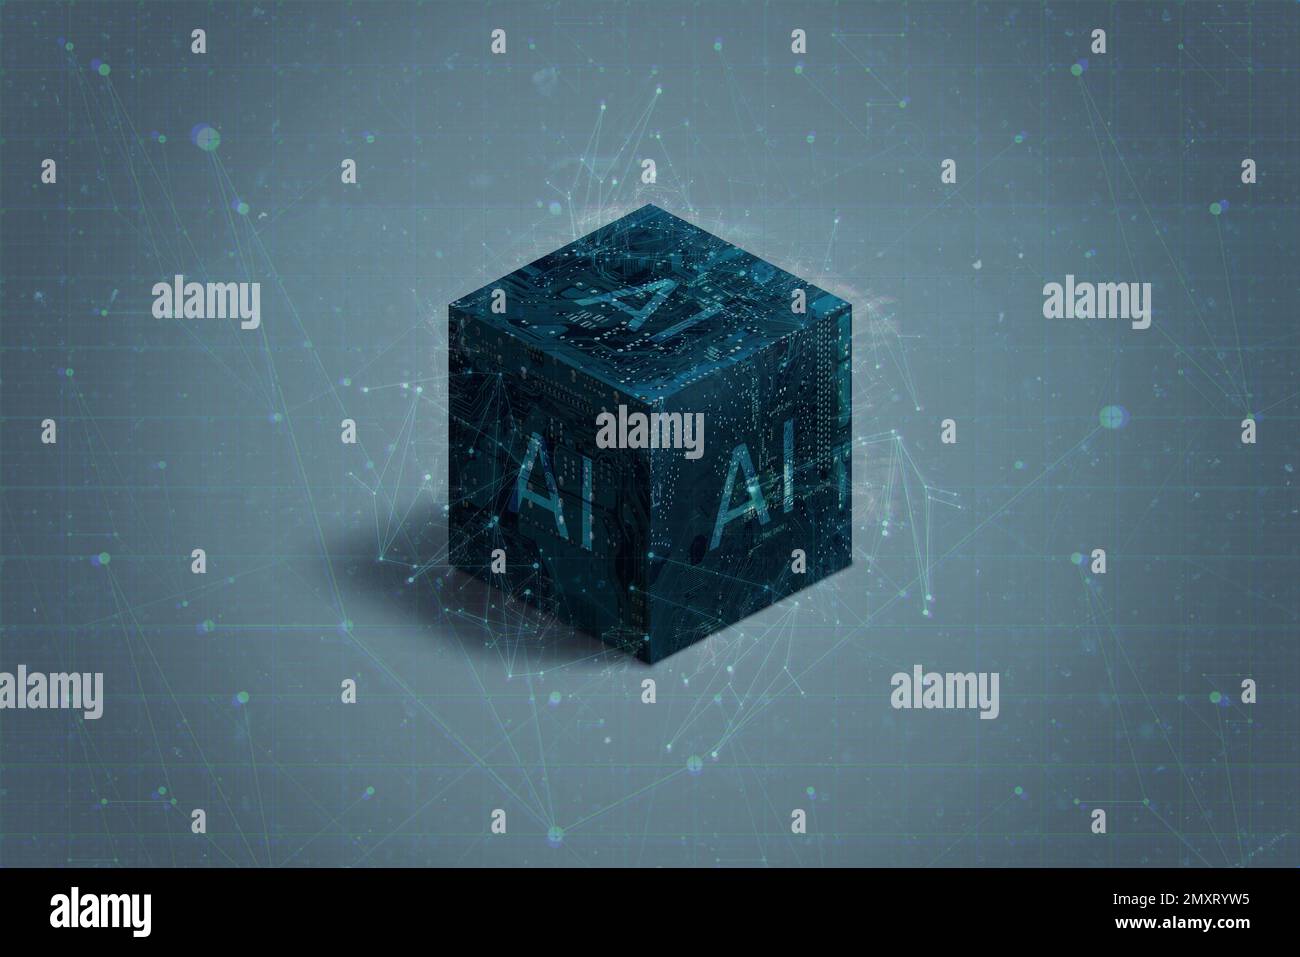 Cubo elettronico astratto e futuristico, che rappresenta il concetto di intelligenza artificiale. L'elegante superficie metallica del cubo e le luci scintillanti si risplendono Foto Stock